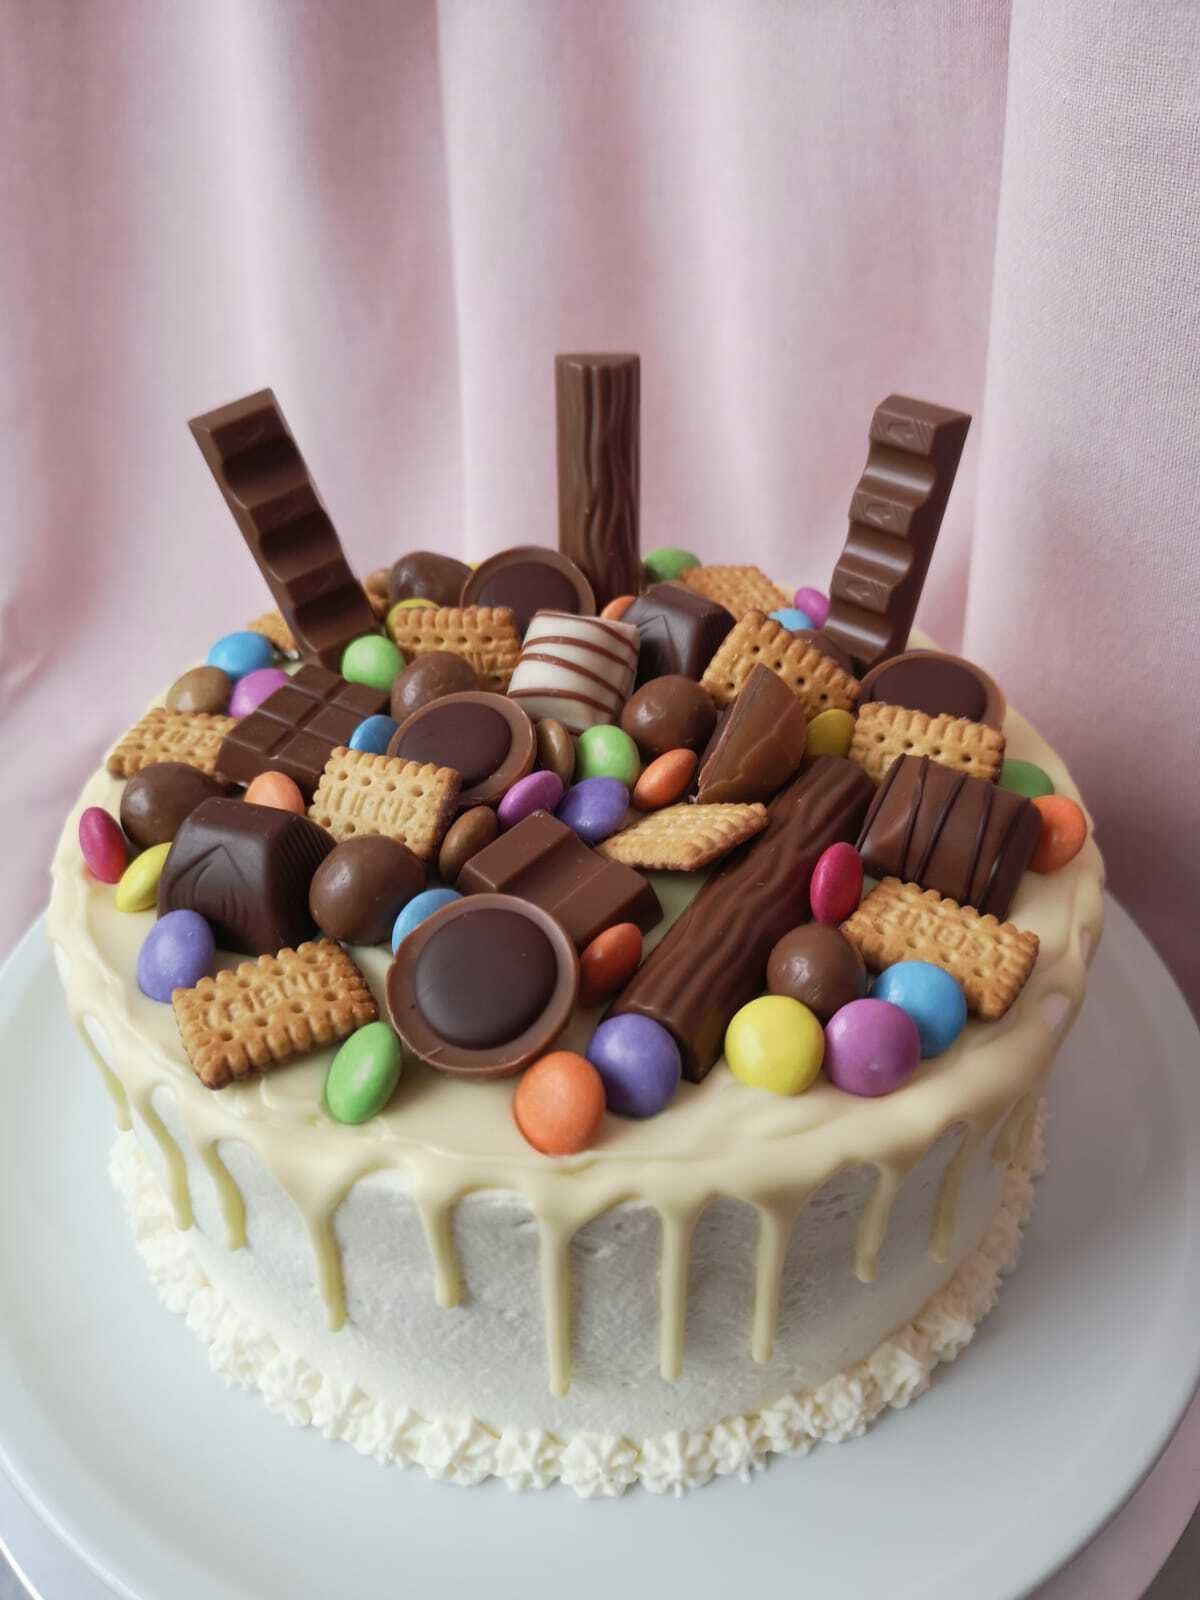 Auf dem Bild ist eine Geburtstagstorte zu sehen dekoriert mit allerlei Keksen, bunten Schokokugeln, Pralinen und Kinderschokoladeriegeln.